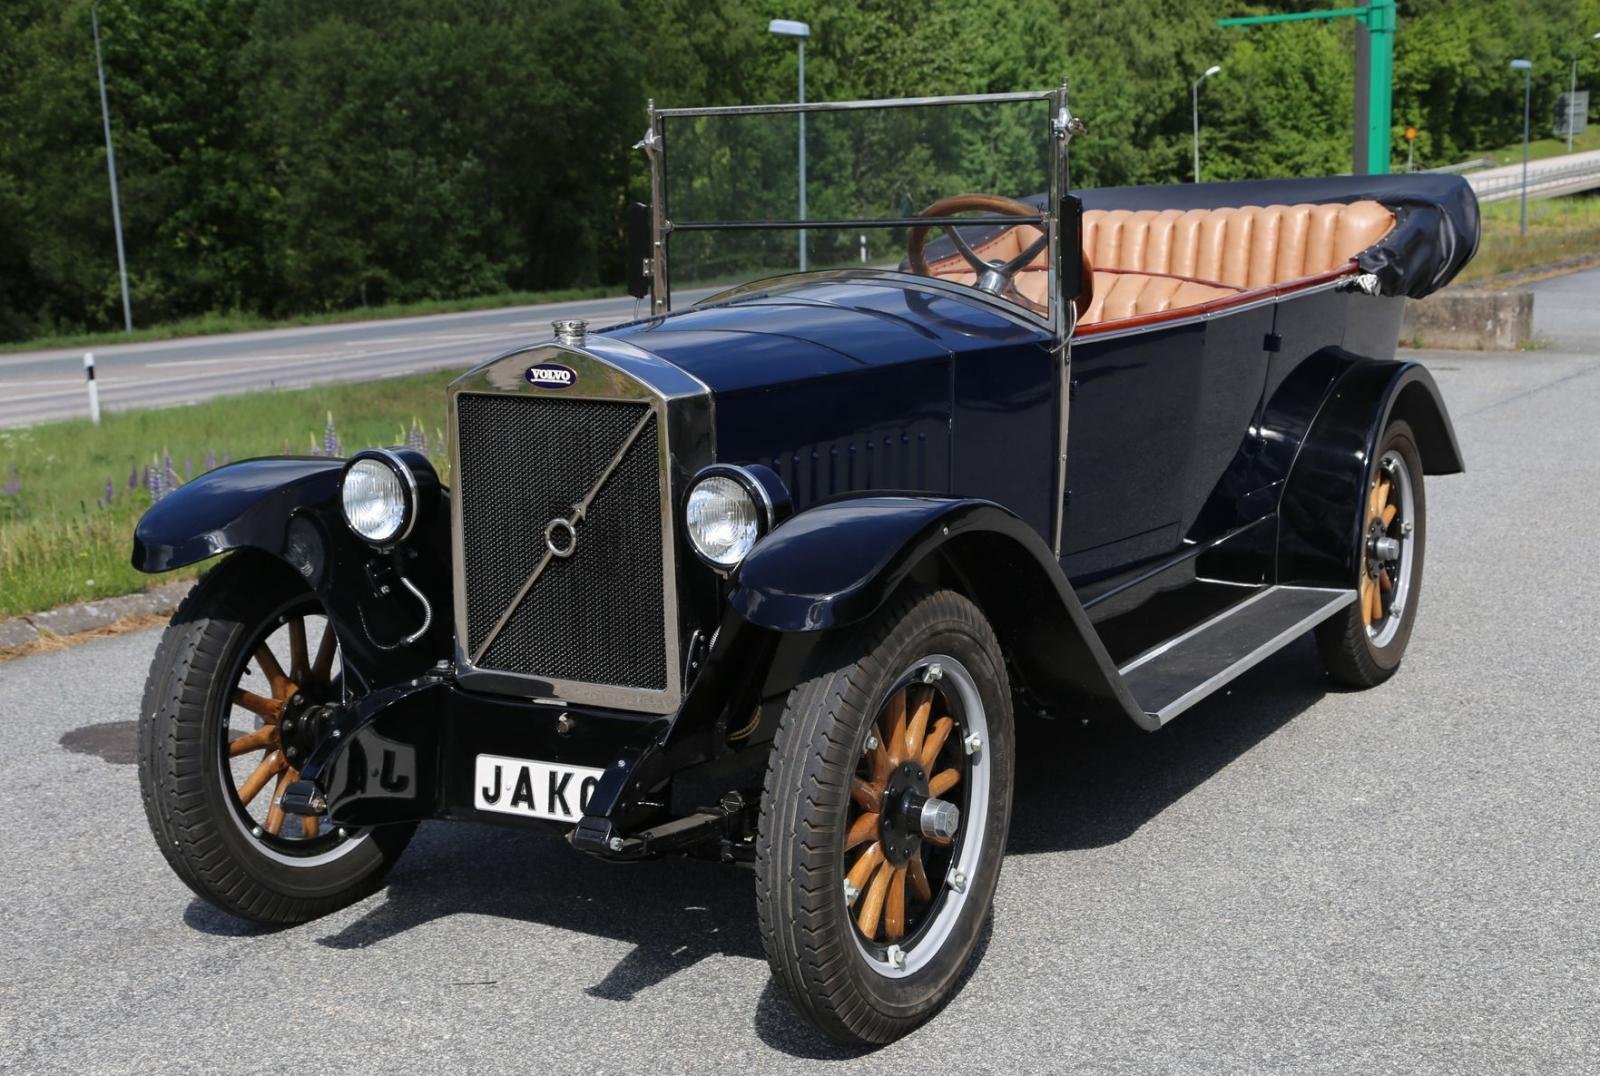 Volvo ÖV 4 - chiếc xe đầu tiên của Volvo - rời nhà máy vào ngày 14 tháng 4 năm 1927. Chiếc xe có biệt danh 